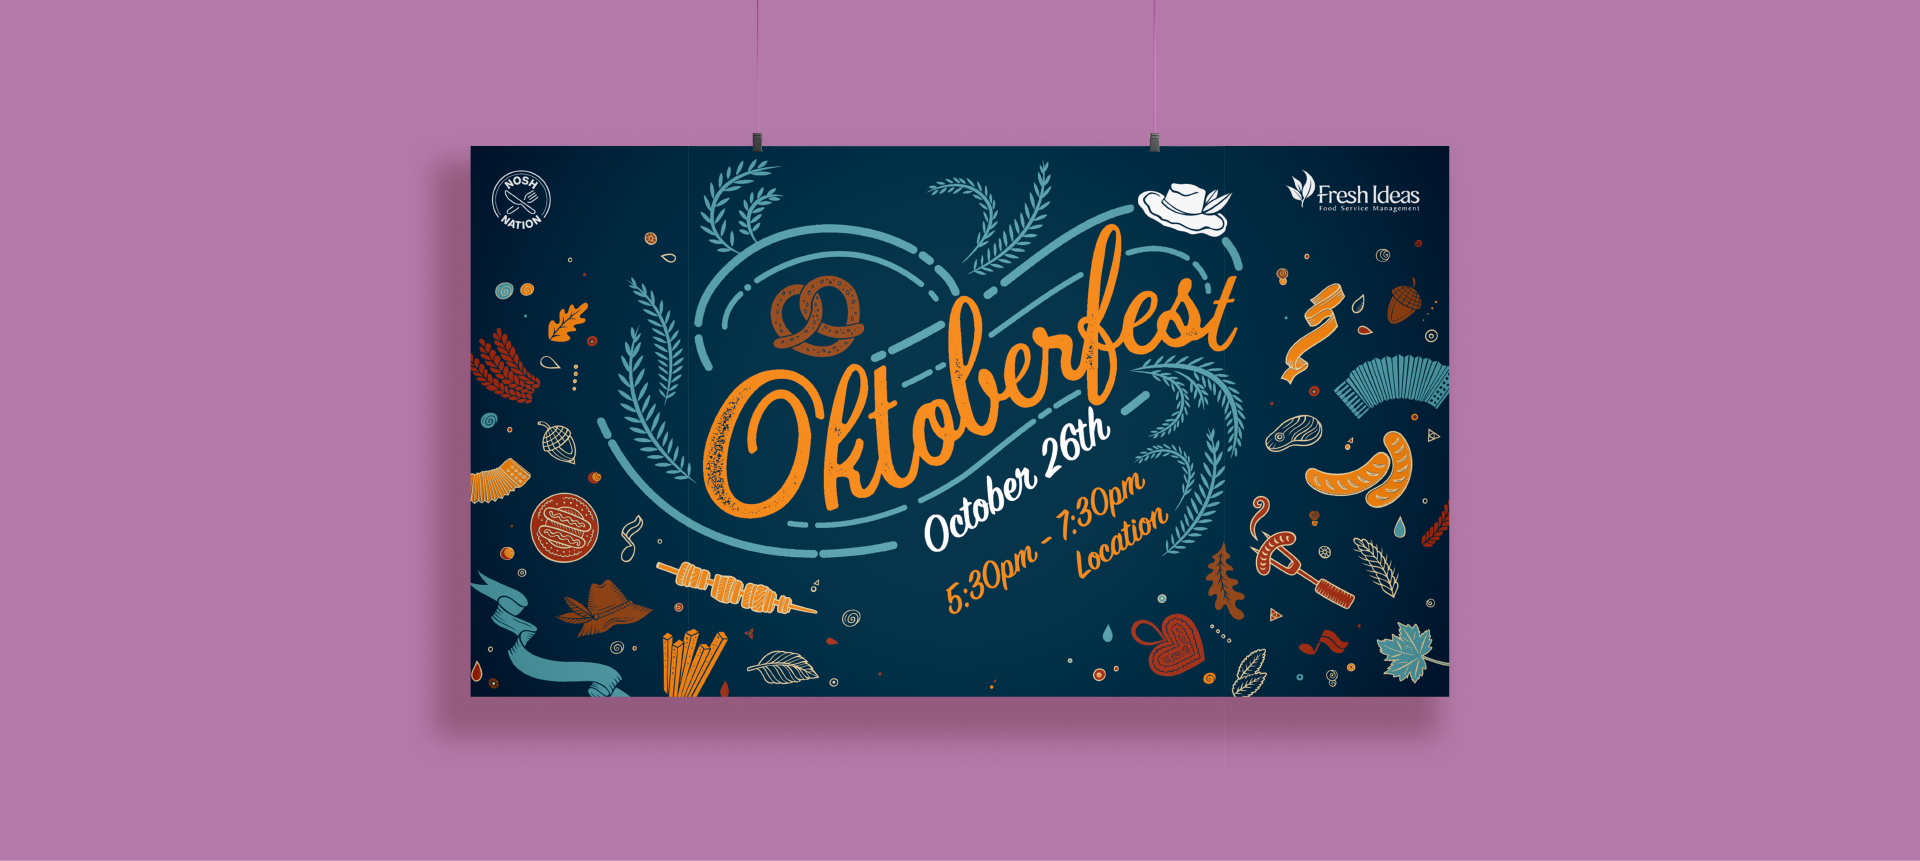 A horizontal poster advertising an Oktoberfest event.